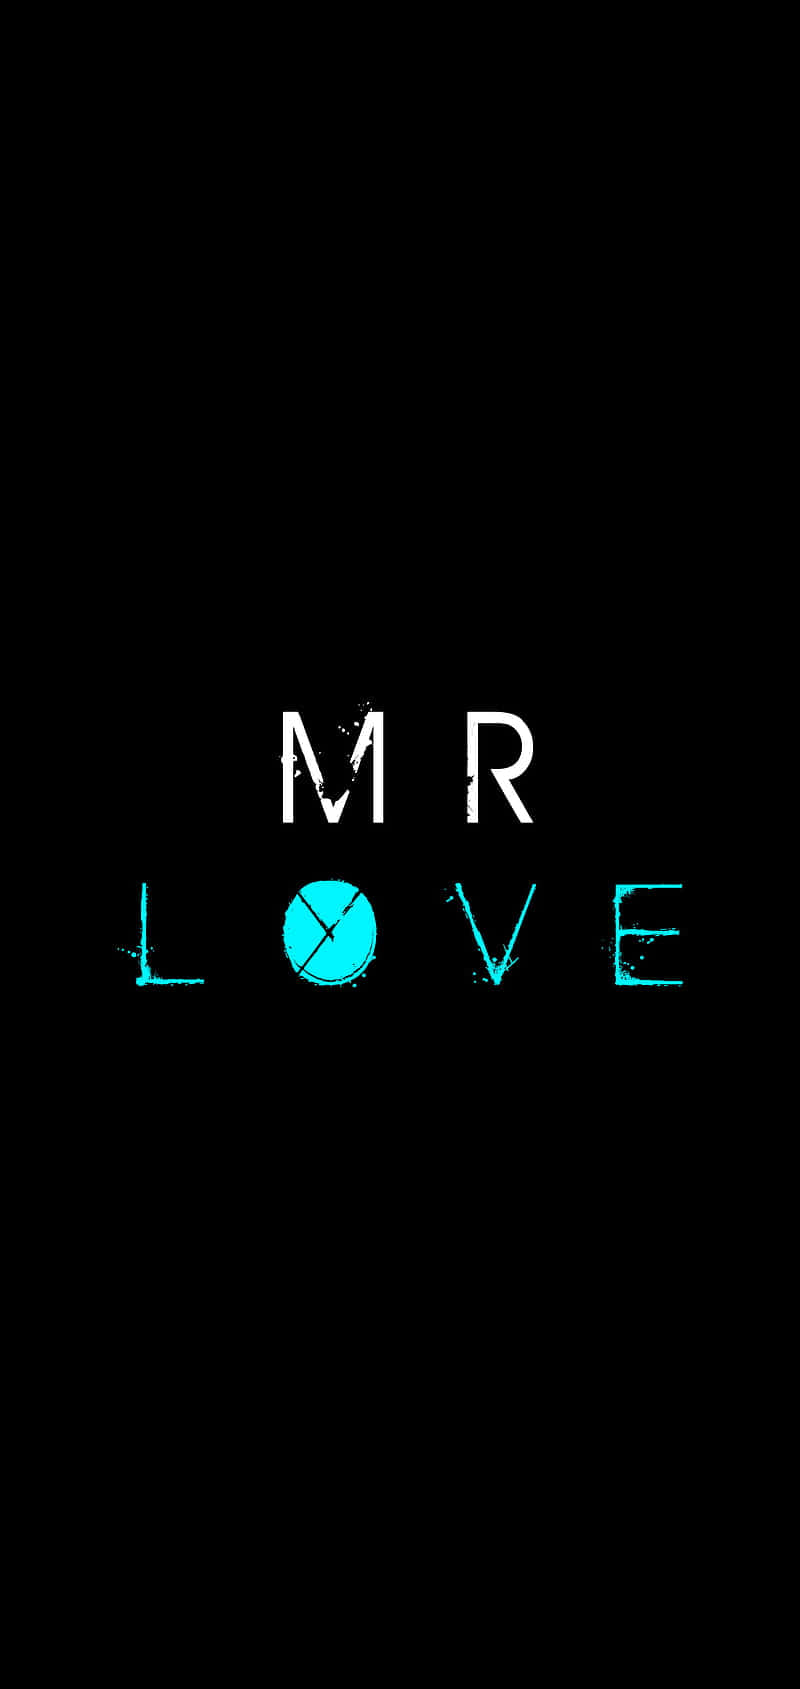 Mr Love - Mr Love - Mr Love - Mr Love - Mr Love - M Wallpaper